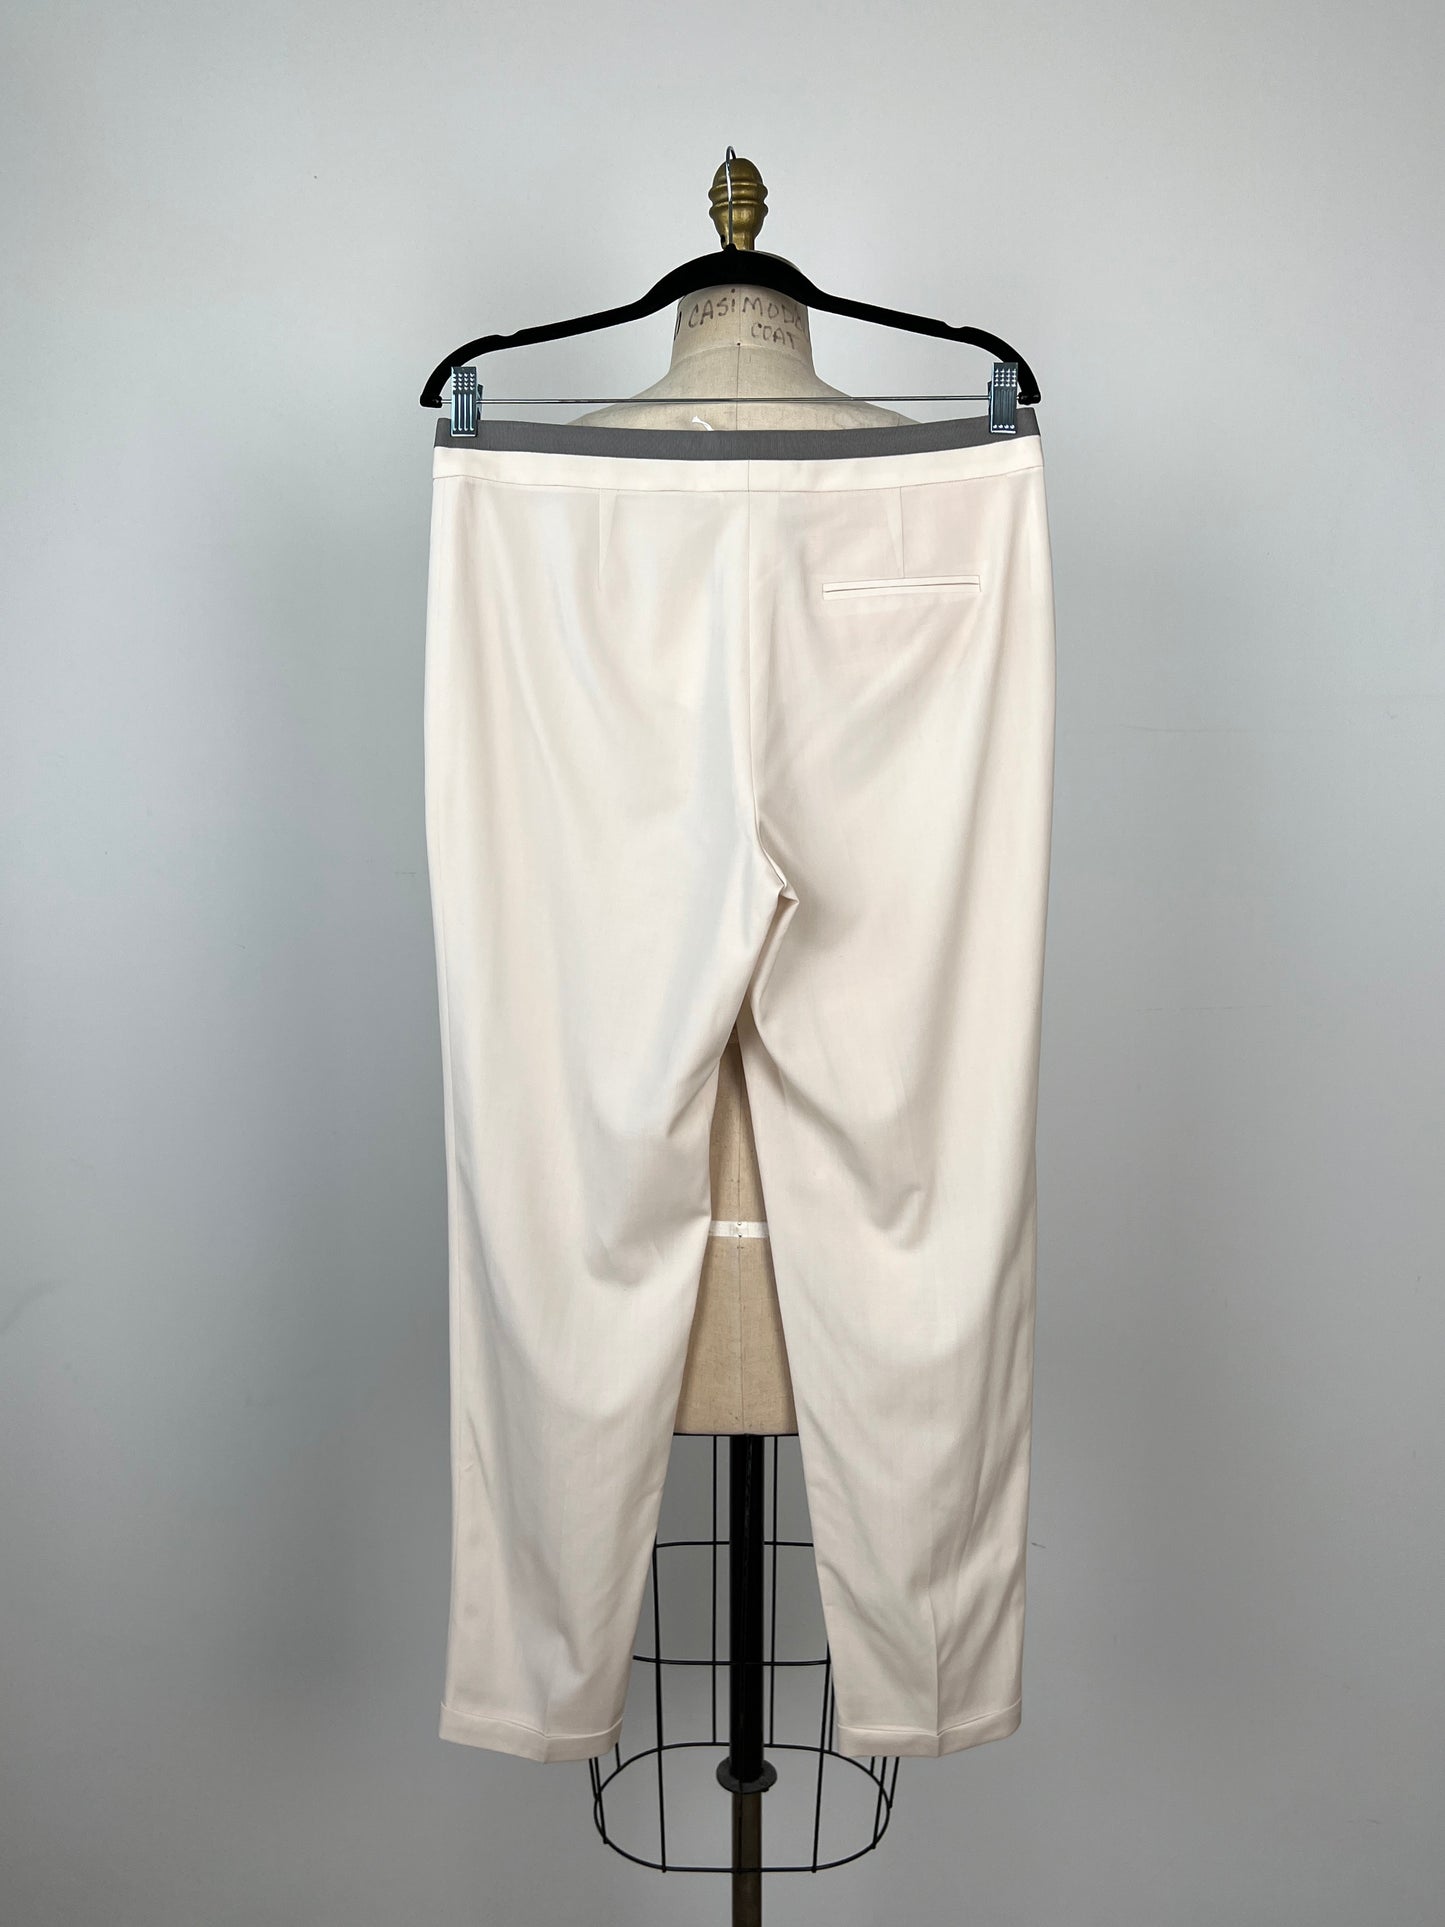 Pantalon crème en fin tissage luxueux (S+M)